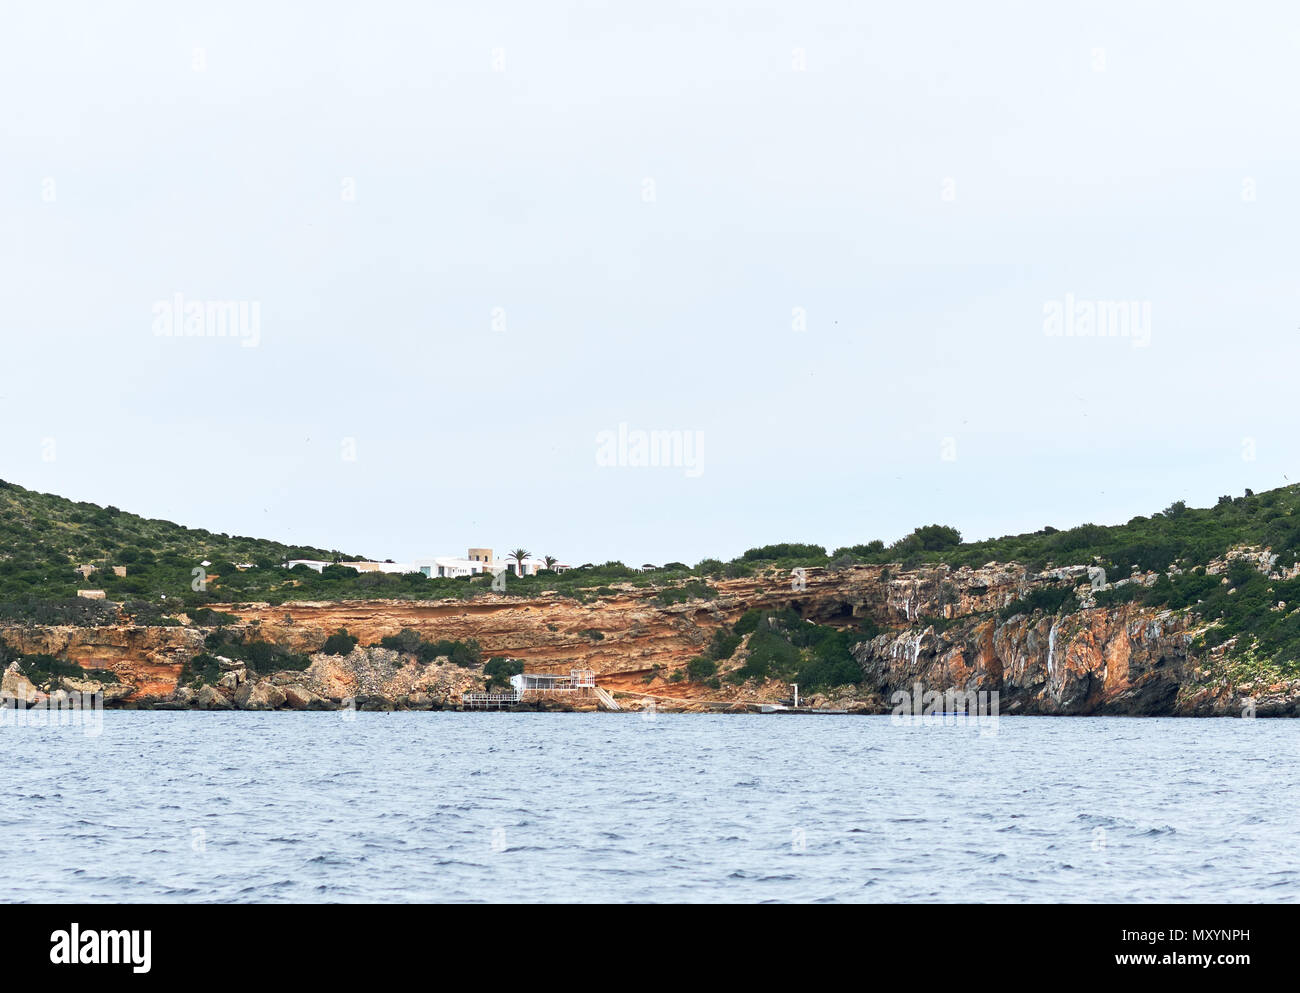 L'île de Tagomago ou Illa de Tagomago, est une île privée au large de la côte est d'Ibiza, Iles Baléares, Espagne. Banque D'Images